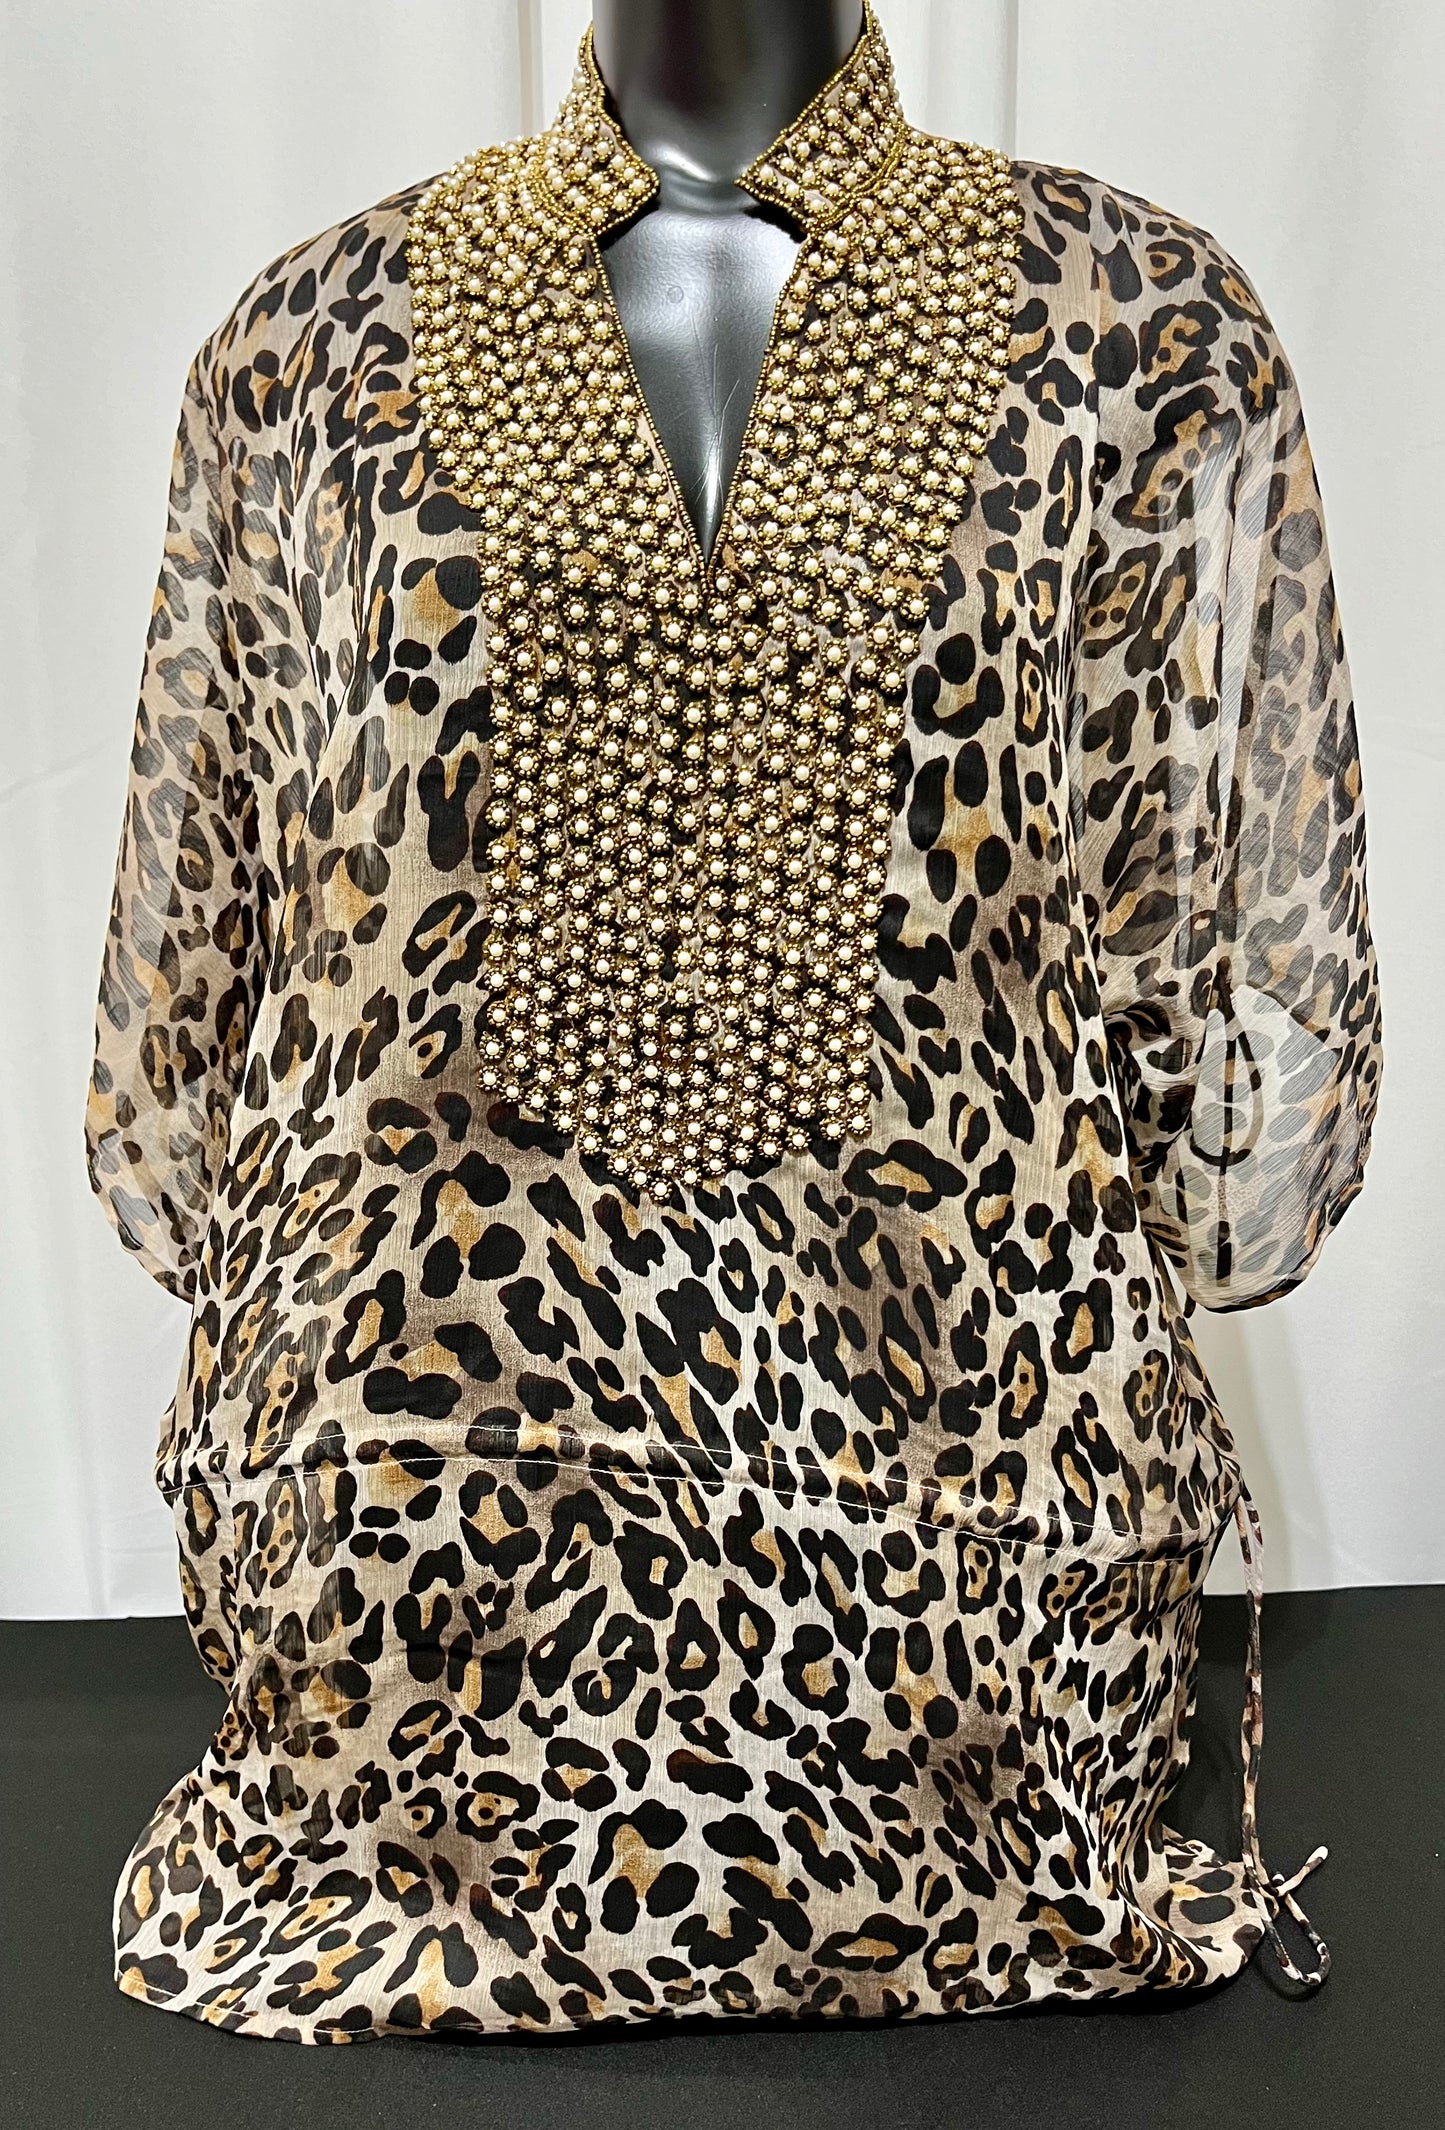 Leopard Jewel Neck Sheer Tunic Top